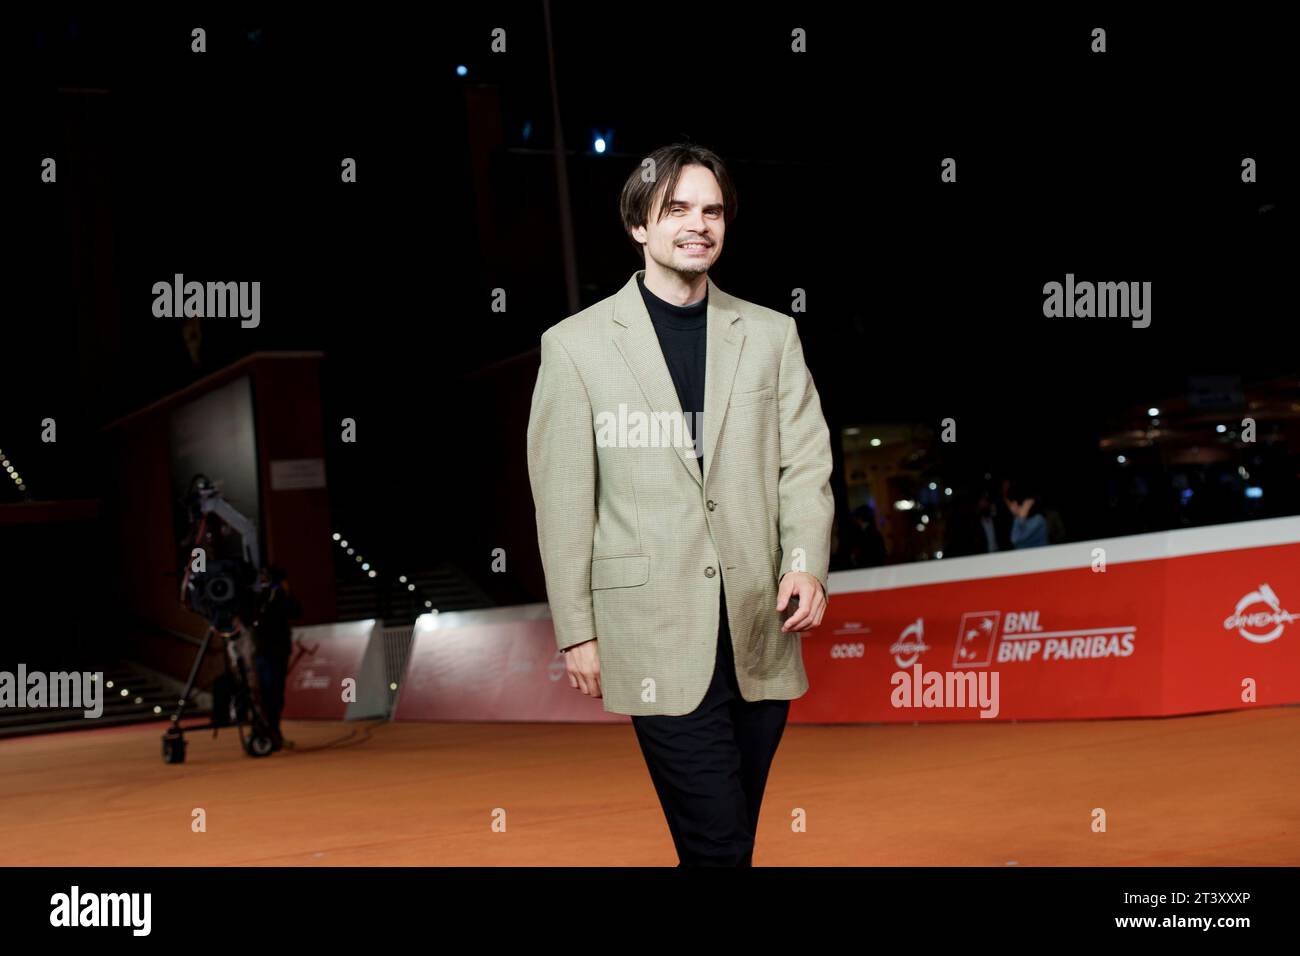 ROMA, ITALIA - OTTOBRE 26: Kristoffer Borgli partecipa al Red carpet per il film "Dream scenario" durante il 18° Festival del Cinema di Roma all'Auditorium Parc Foto Stock